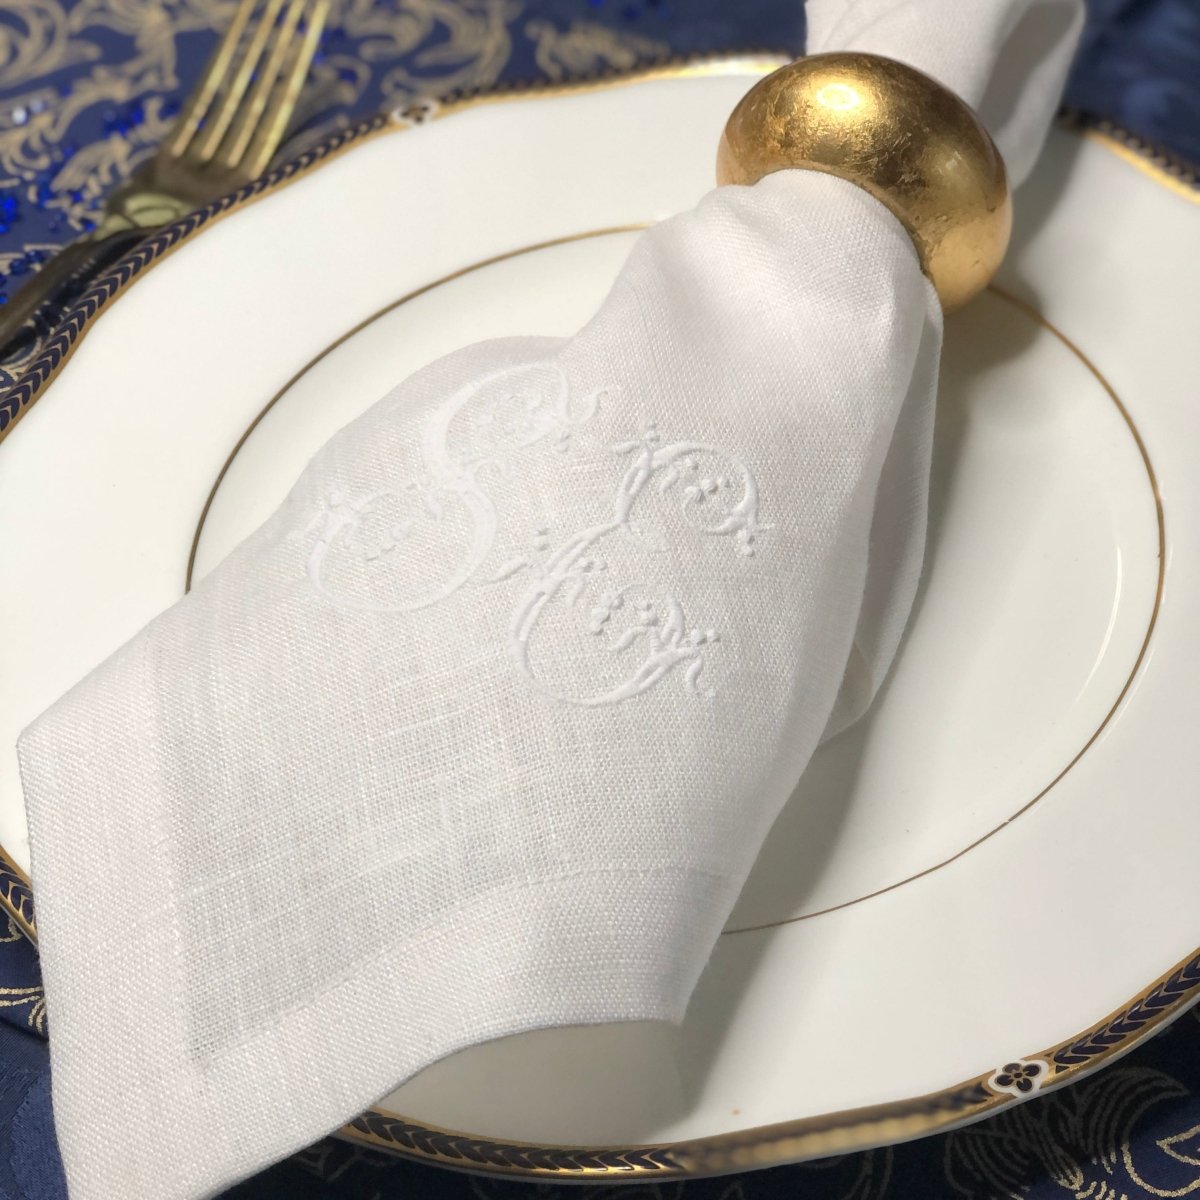 Laurel Leaf Monogrammed Embroidered Cloth Dinner Napkins – White